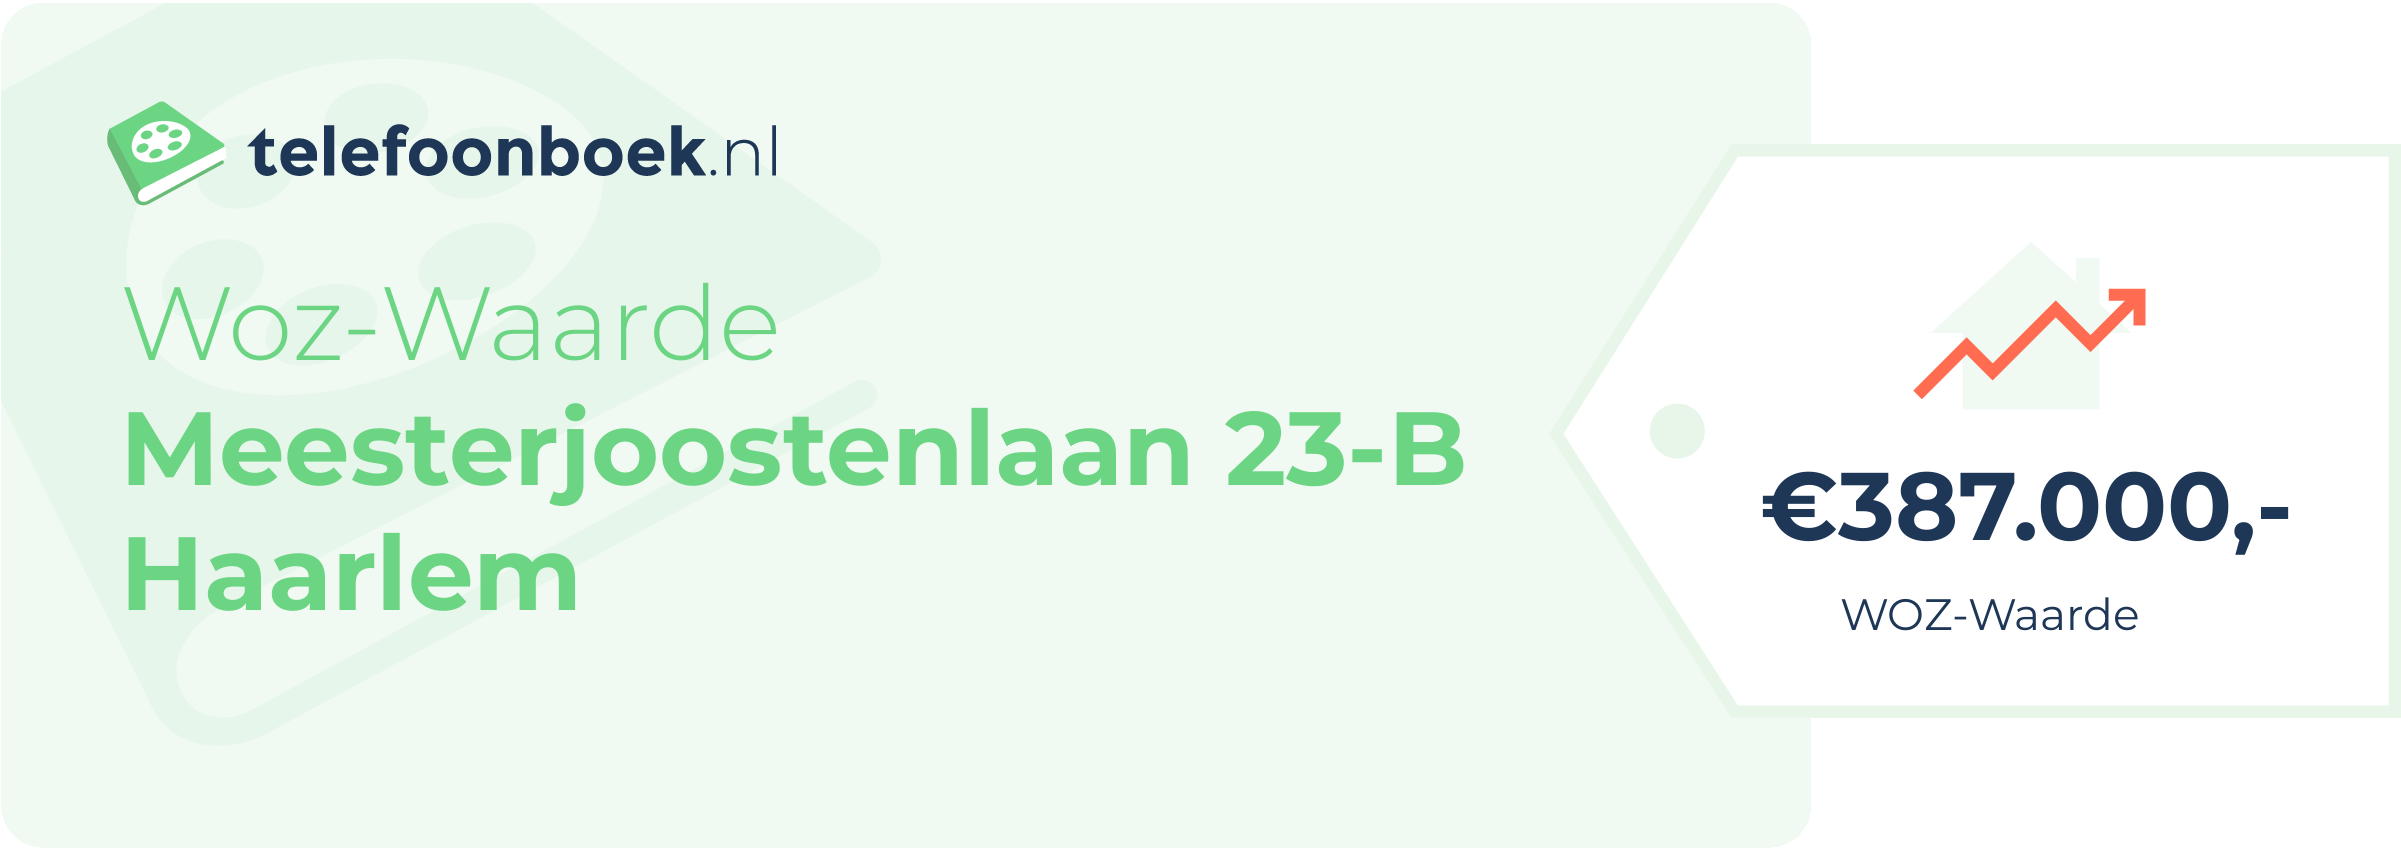 WOZ-waarde Meesterjoostenlaan 23-B Haarlem